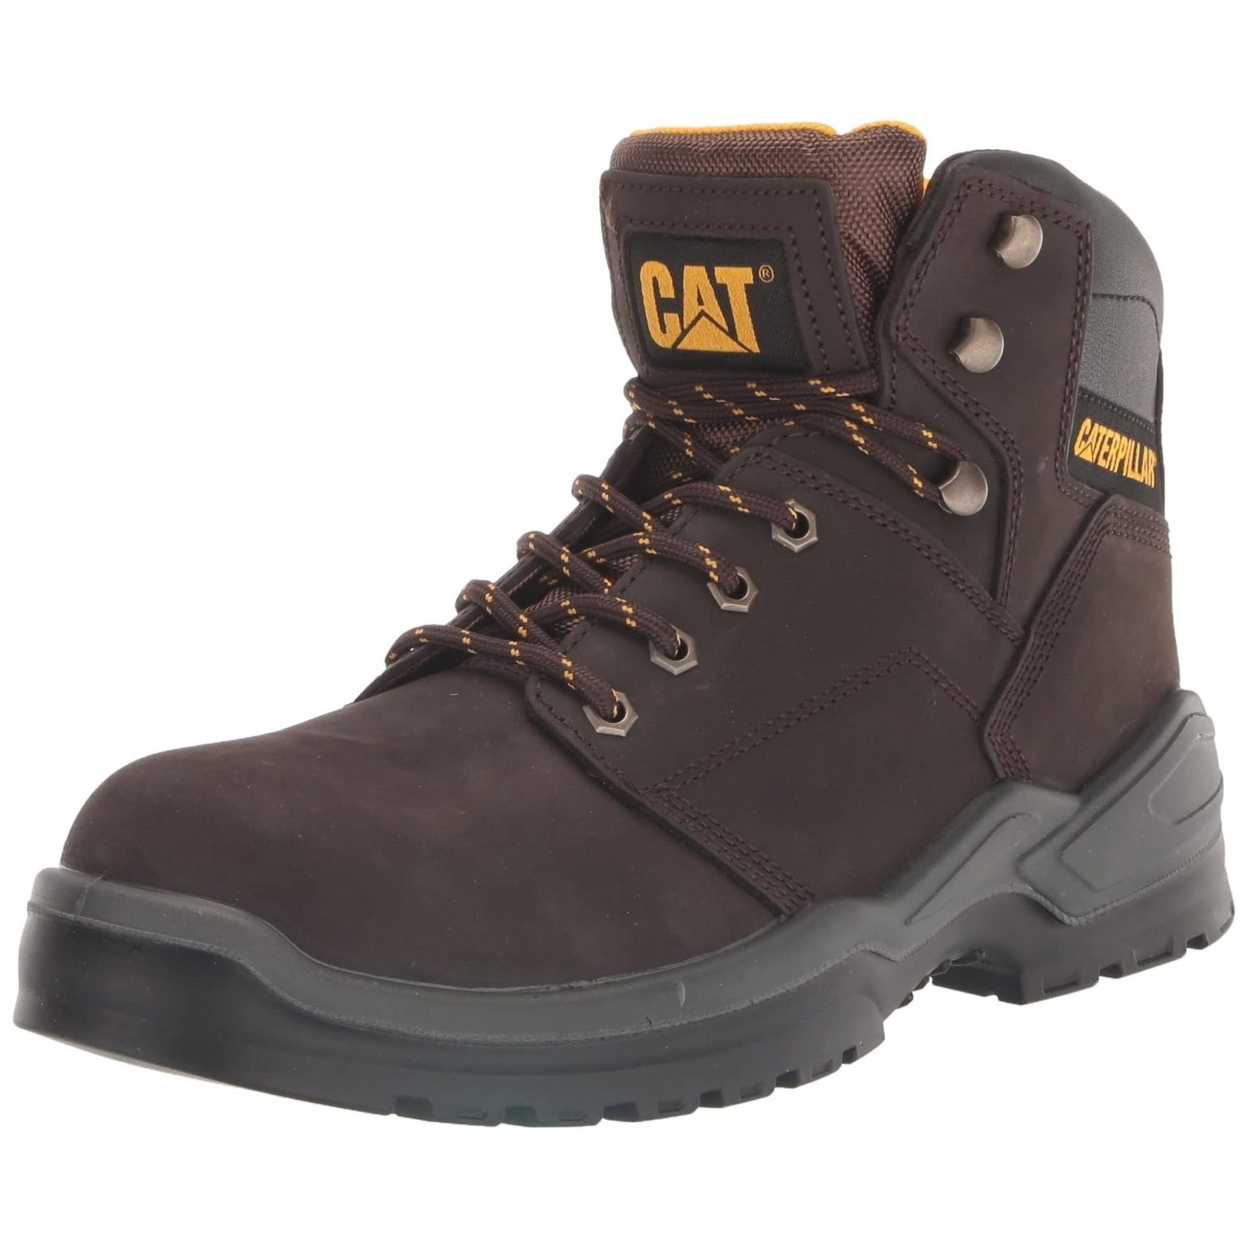 CAT Men's Striver Steel Toe Industrial Boot BROWN - BROWN, 14